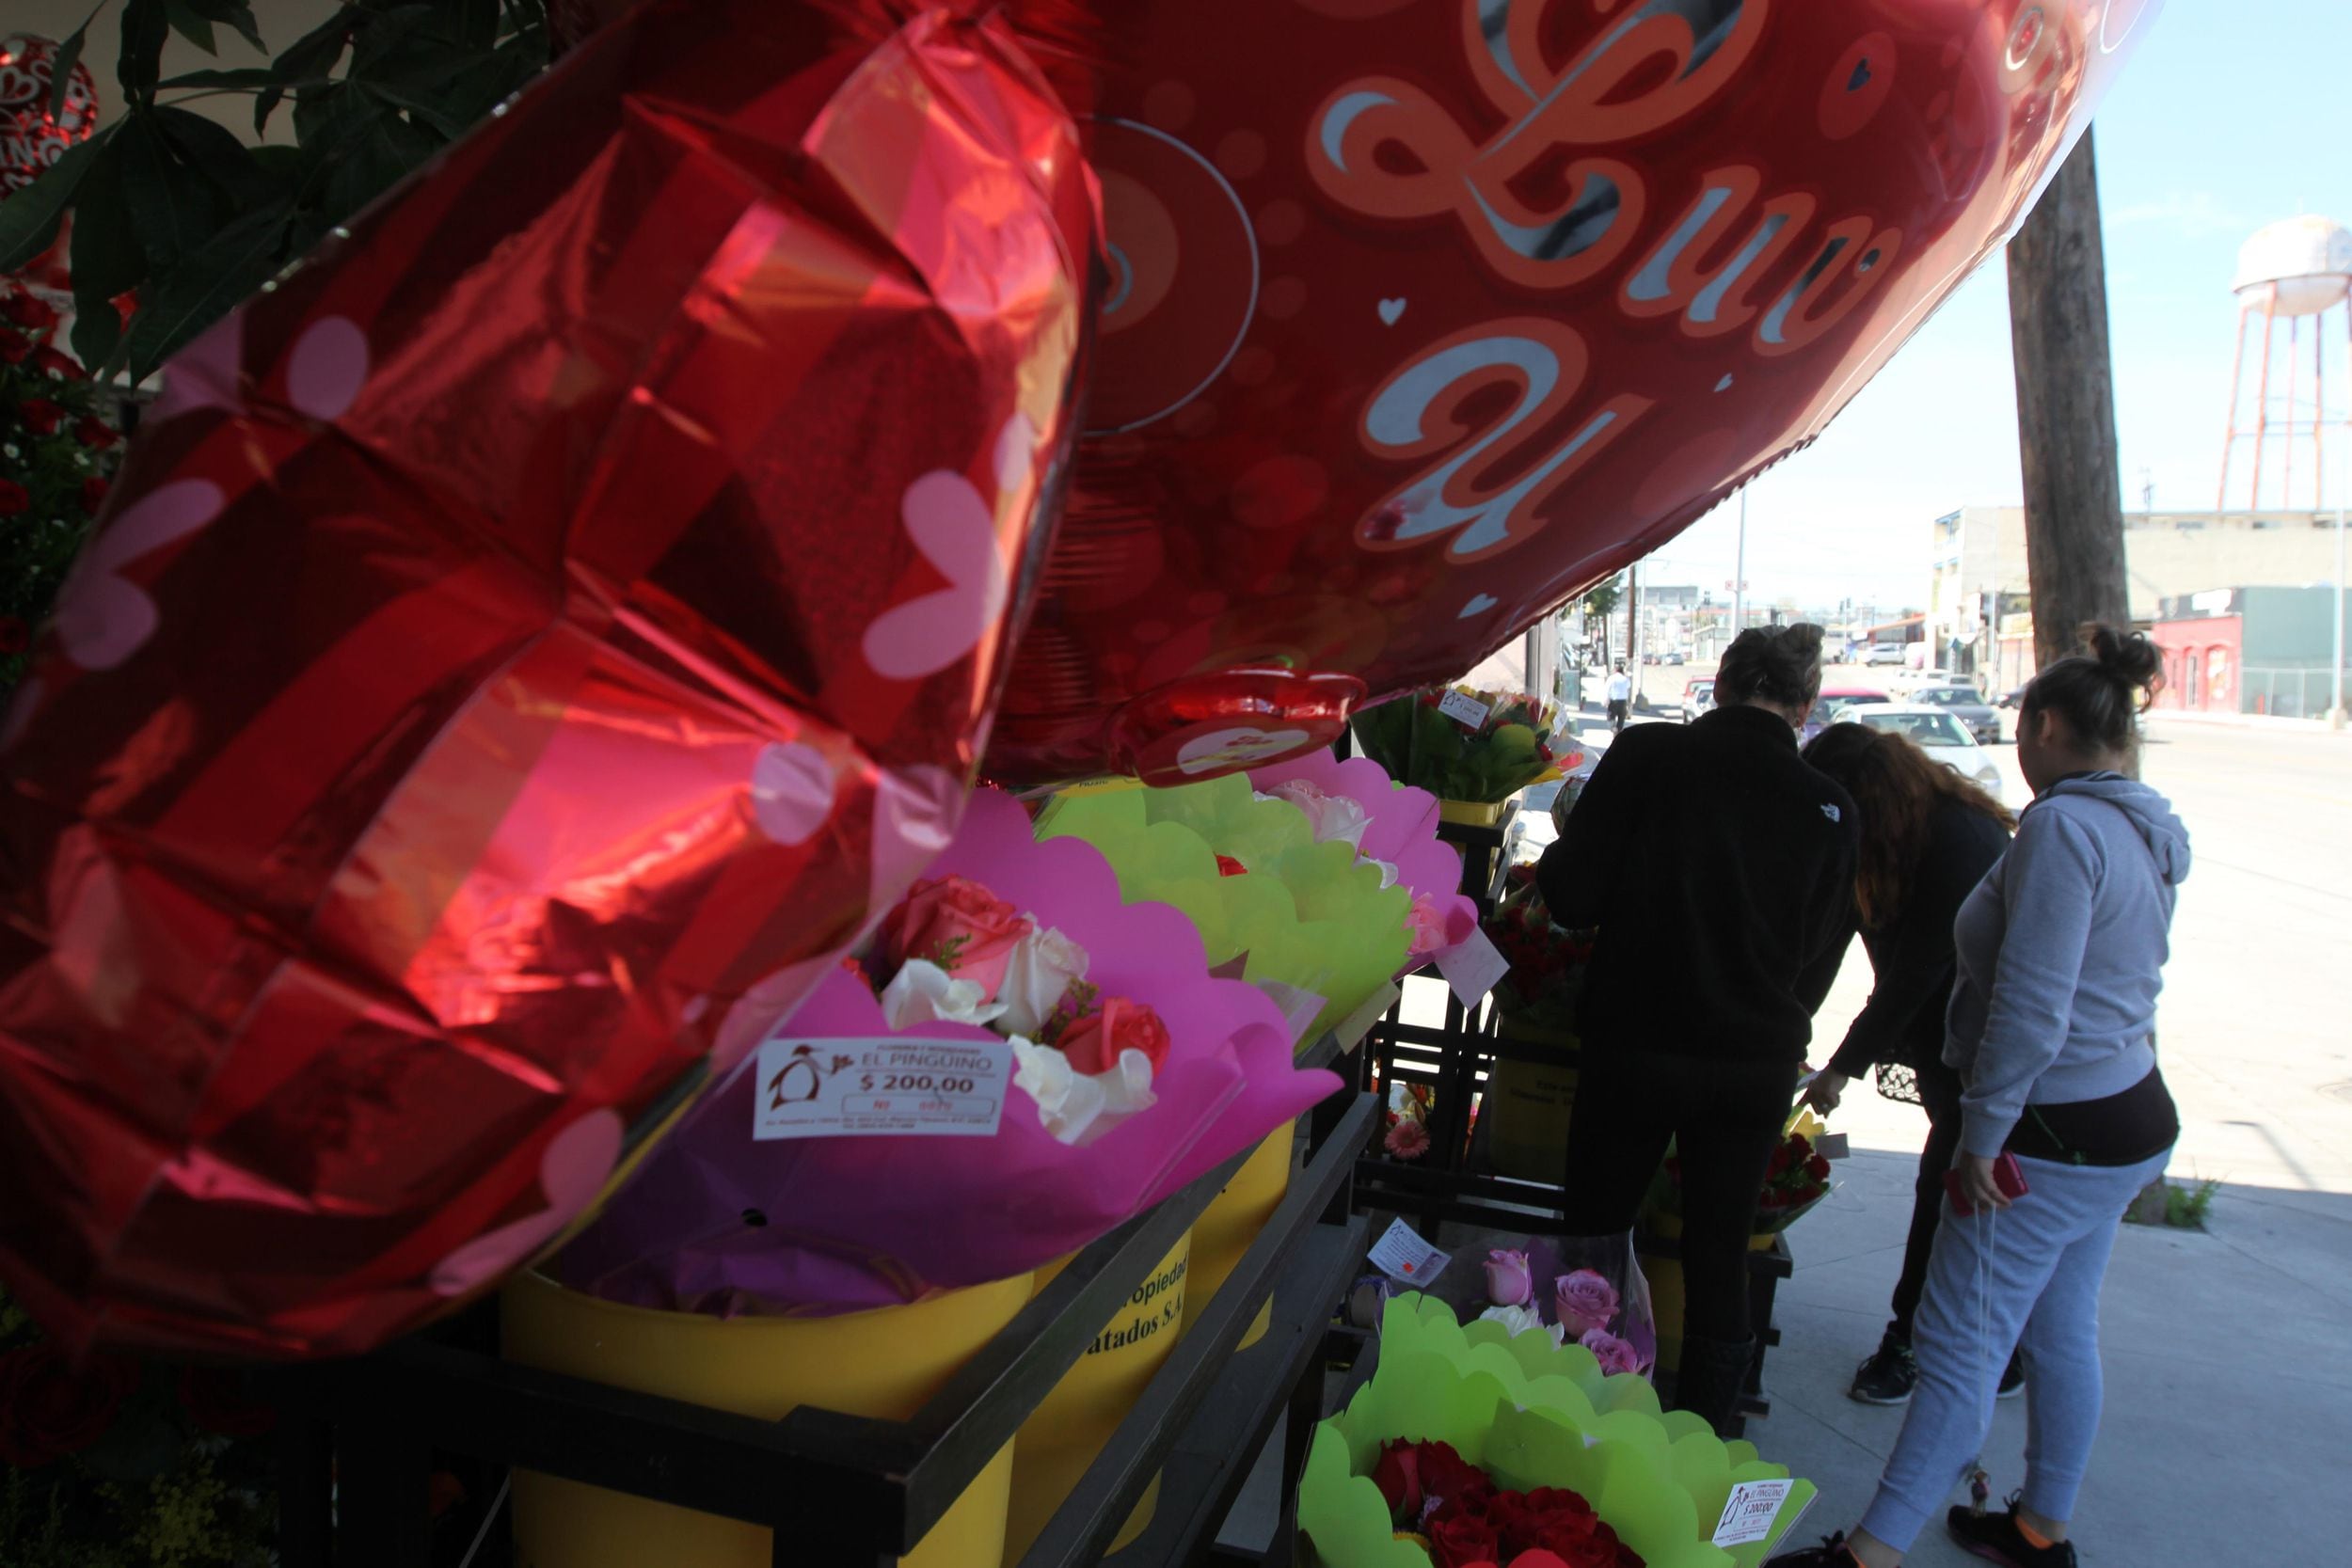 Previo al 14 de febrero ya se observa en comercios la venta de flores y regalos alusivos al Día de San Valentín o Día del Amor y la Amistad. 